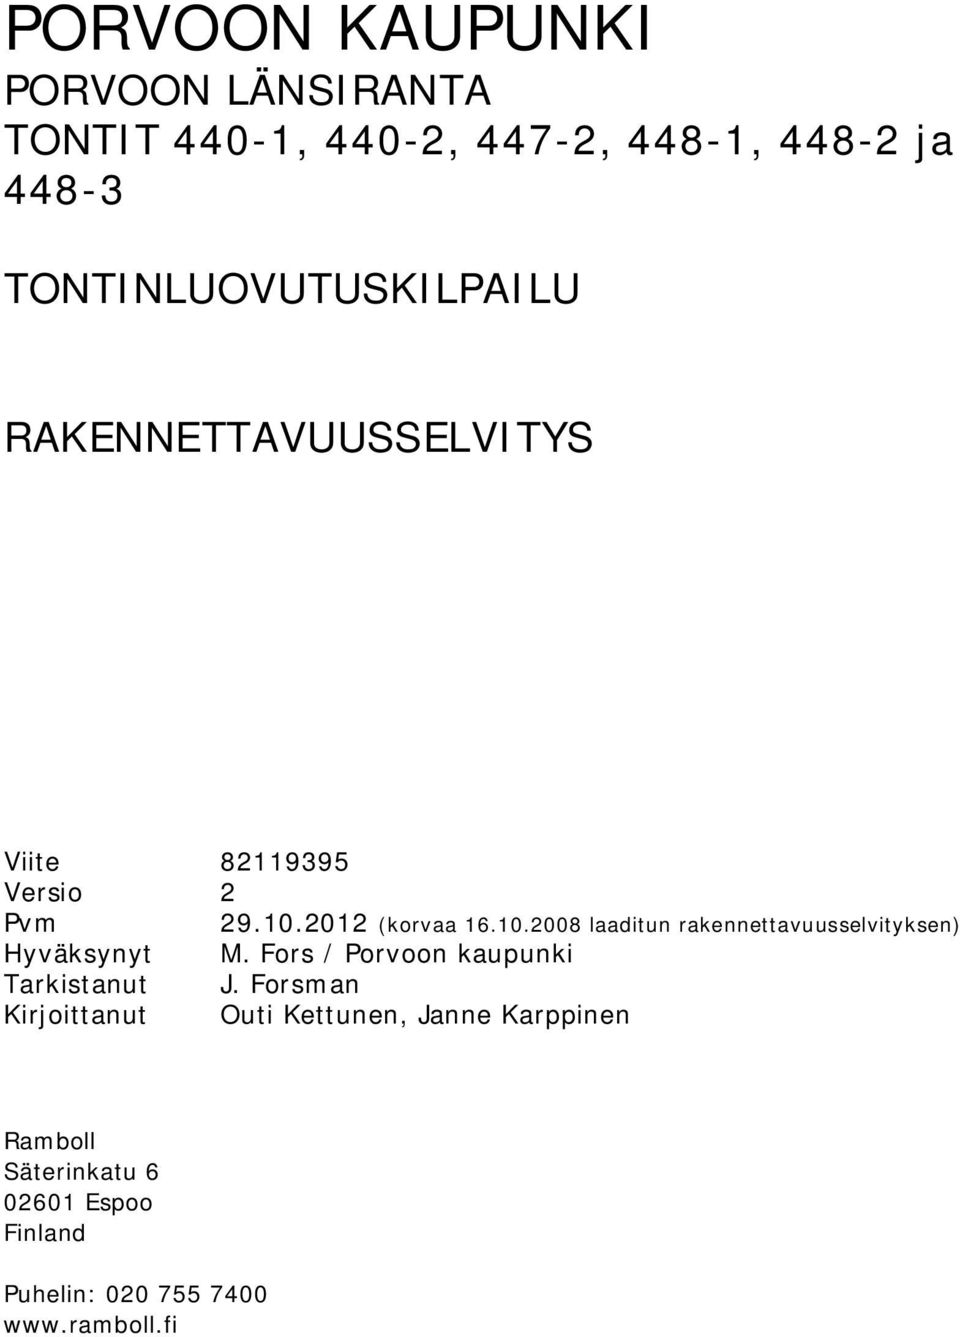 Fors / Porvoon kaupunki Tarkistanut J. Forsman Kirjoittanut Outi Kettunen, Janne Karppinen 29.10.